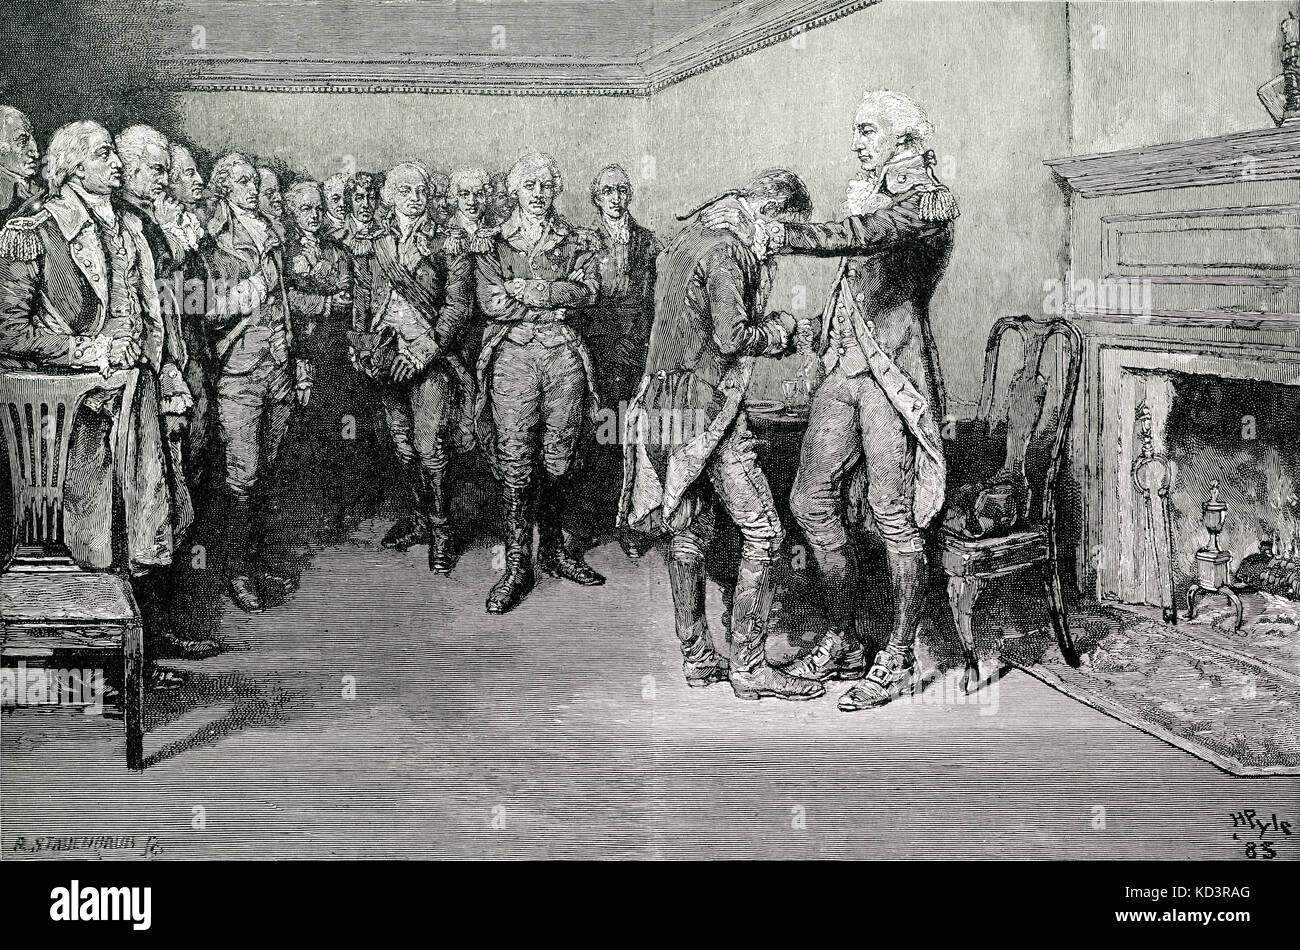 Washington toma salir de sus oficiales, el 4 de diciembre de 1783, tras el final de la Revolución Americana. Ilustración de Howard Pyle, 1896 Foto de stock